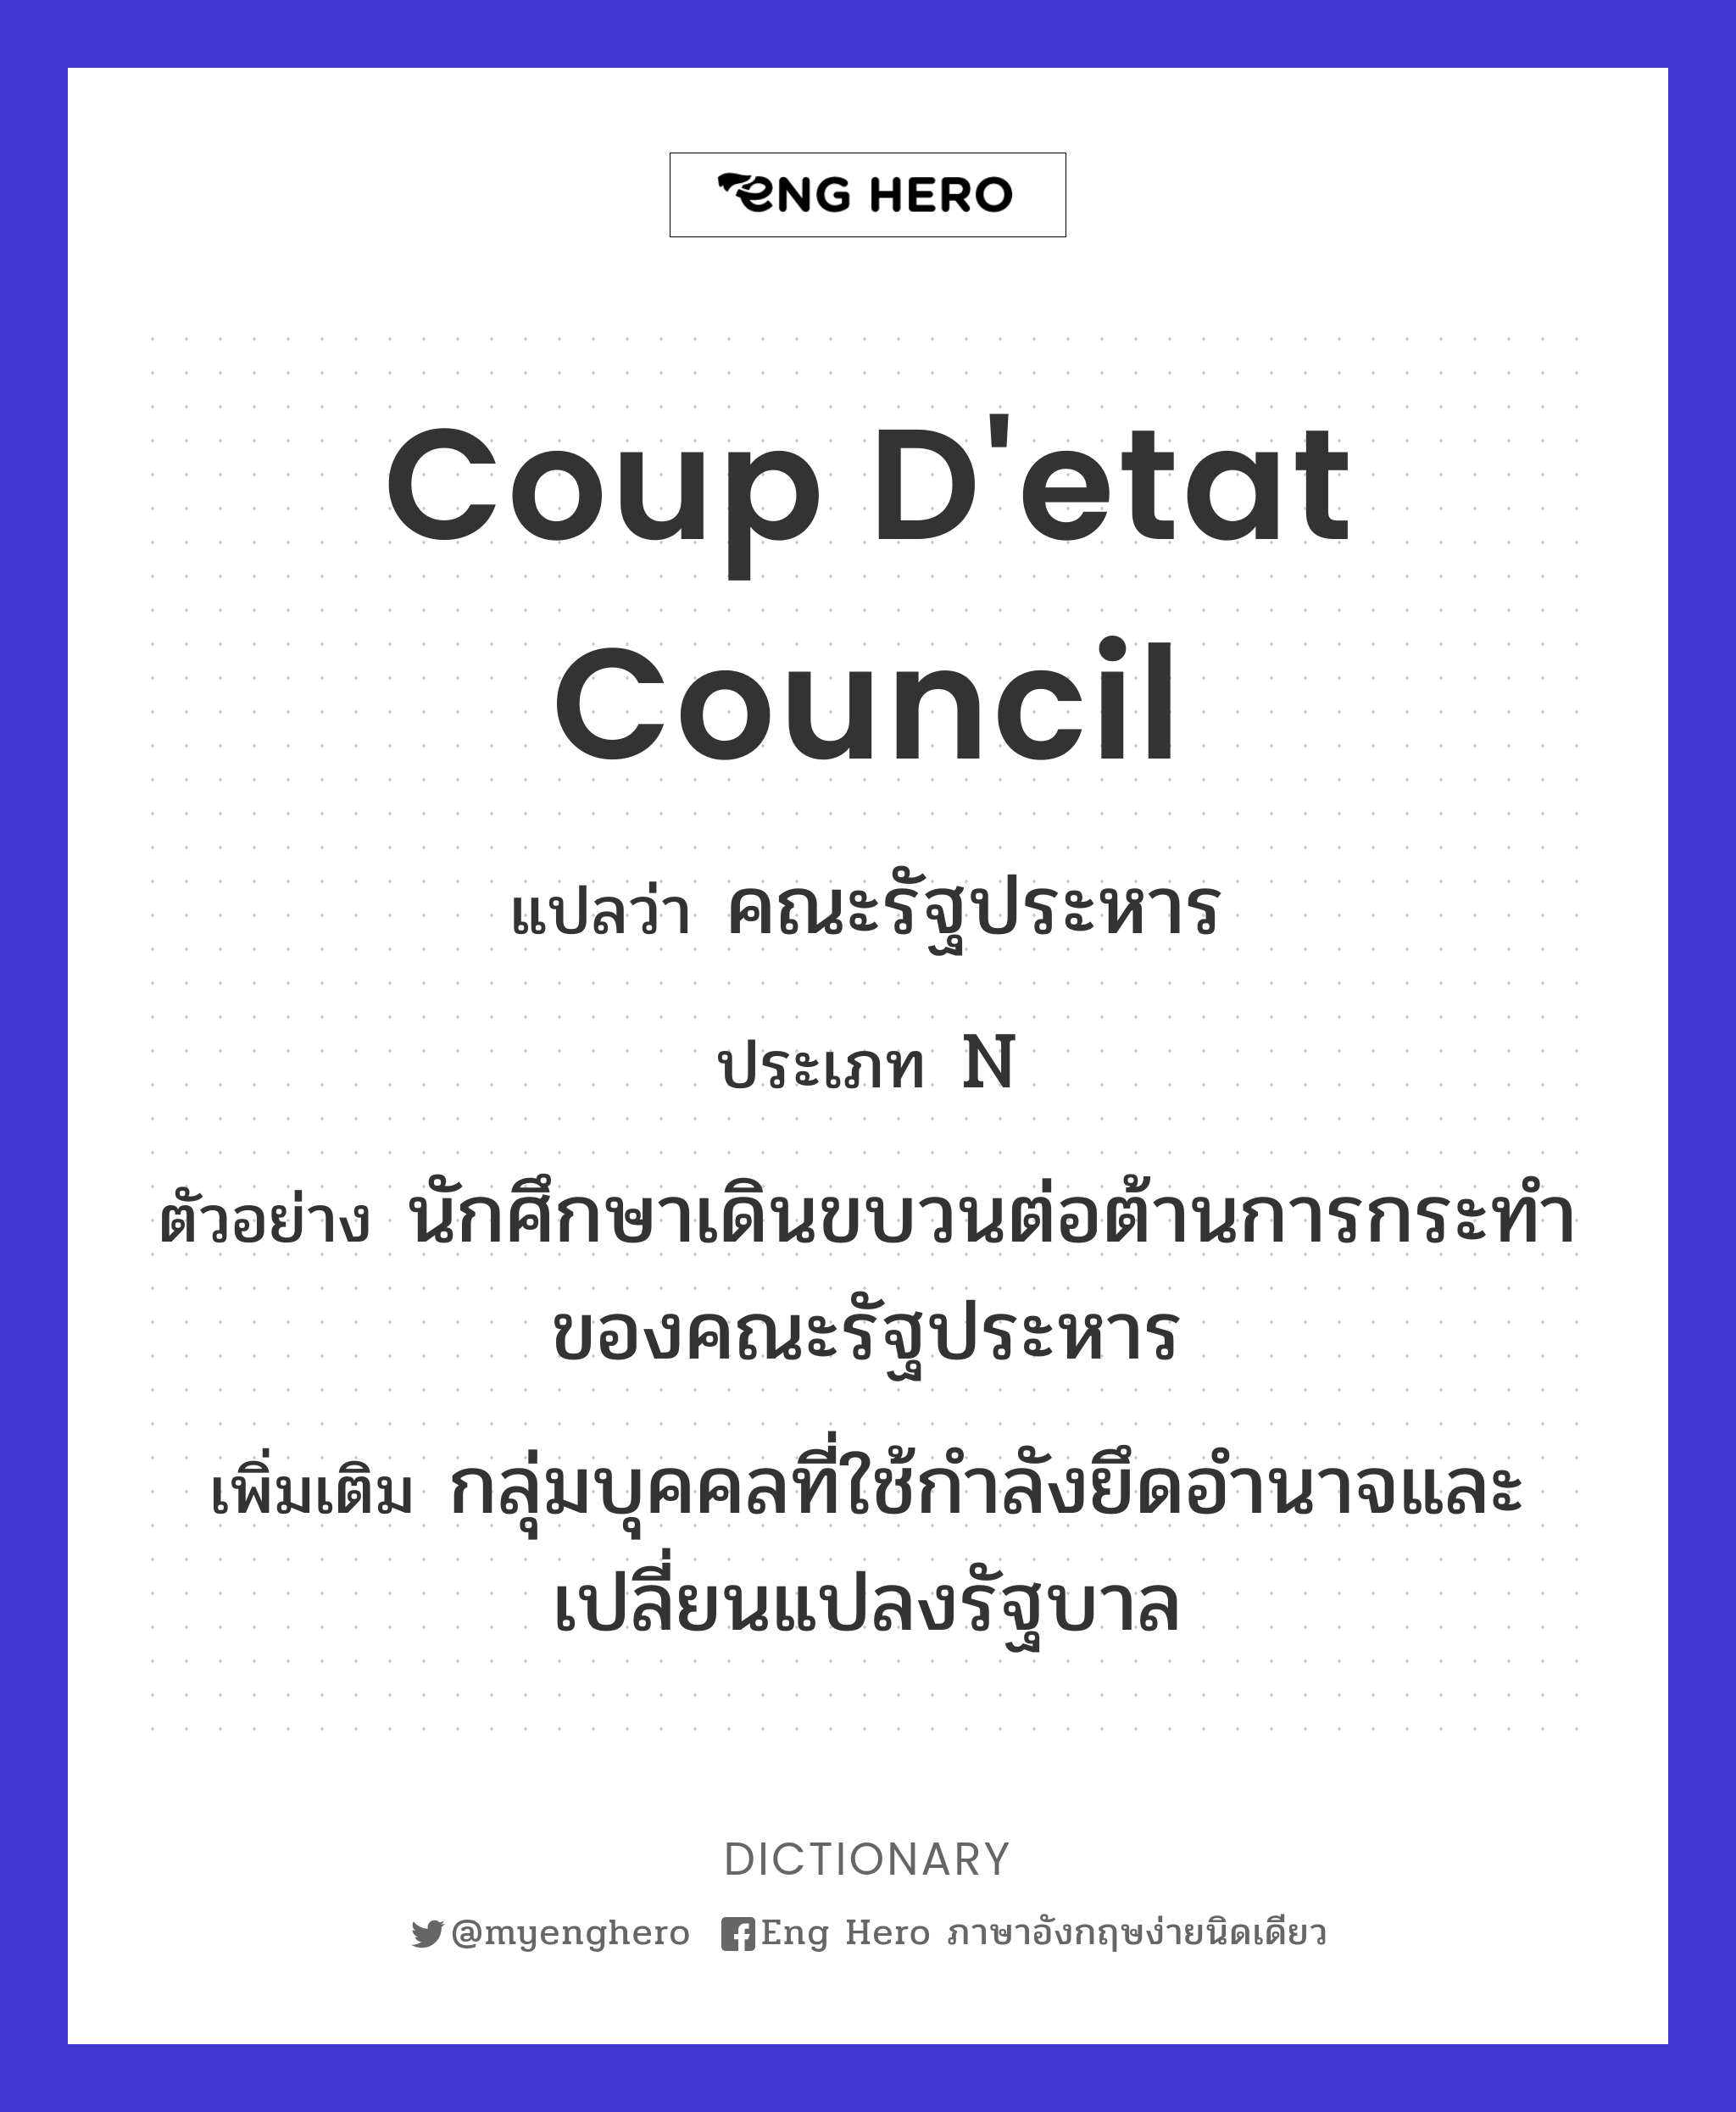 coup d'etat council